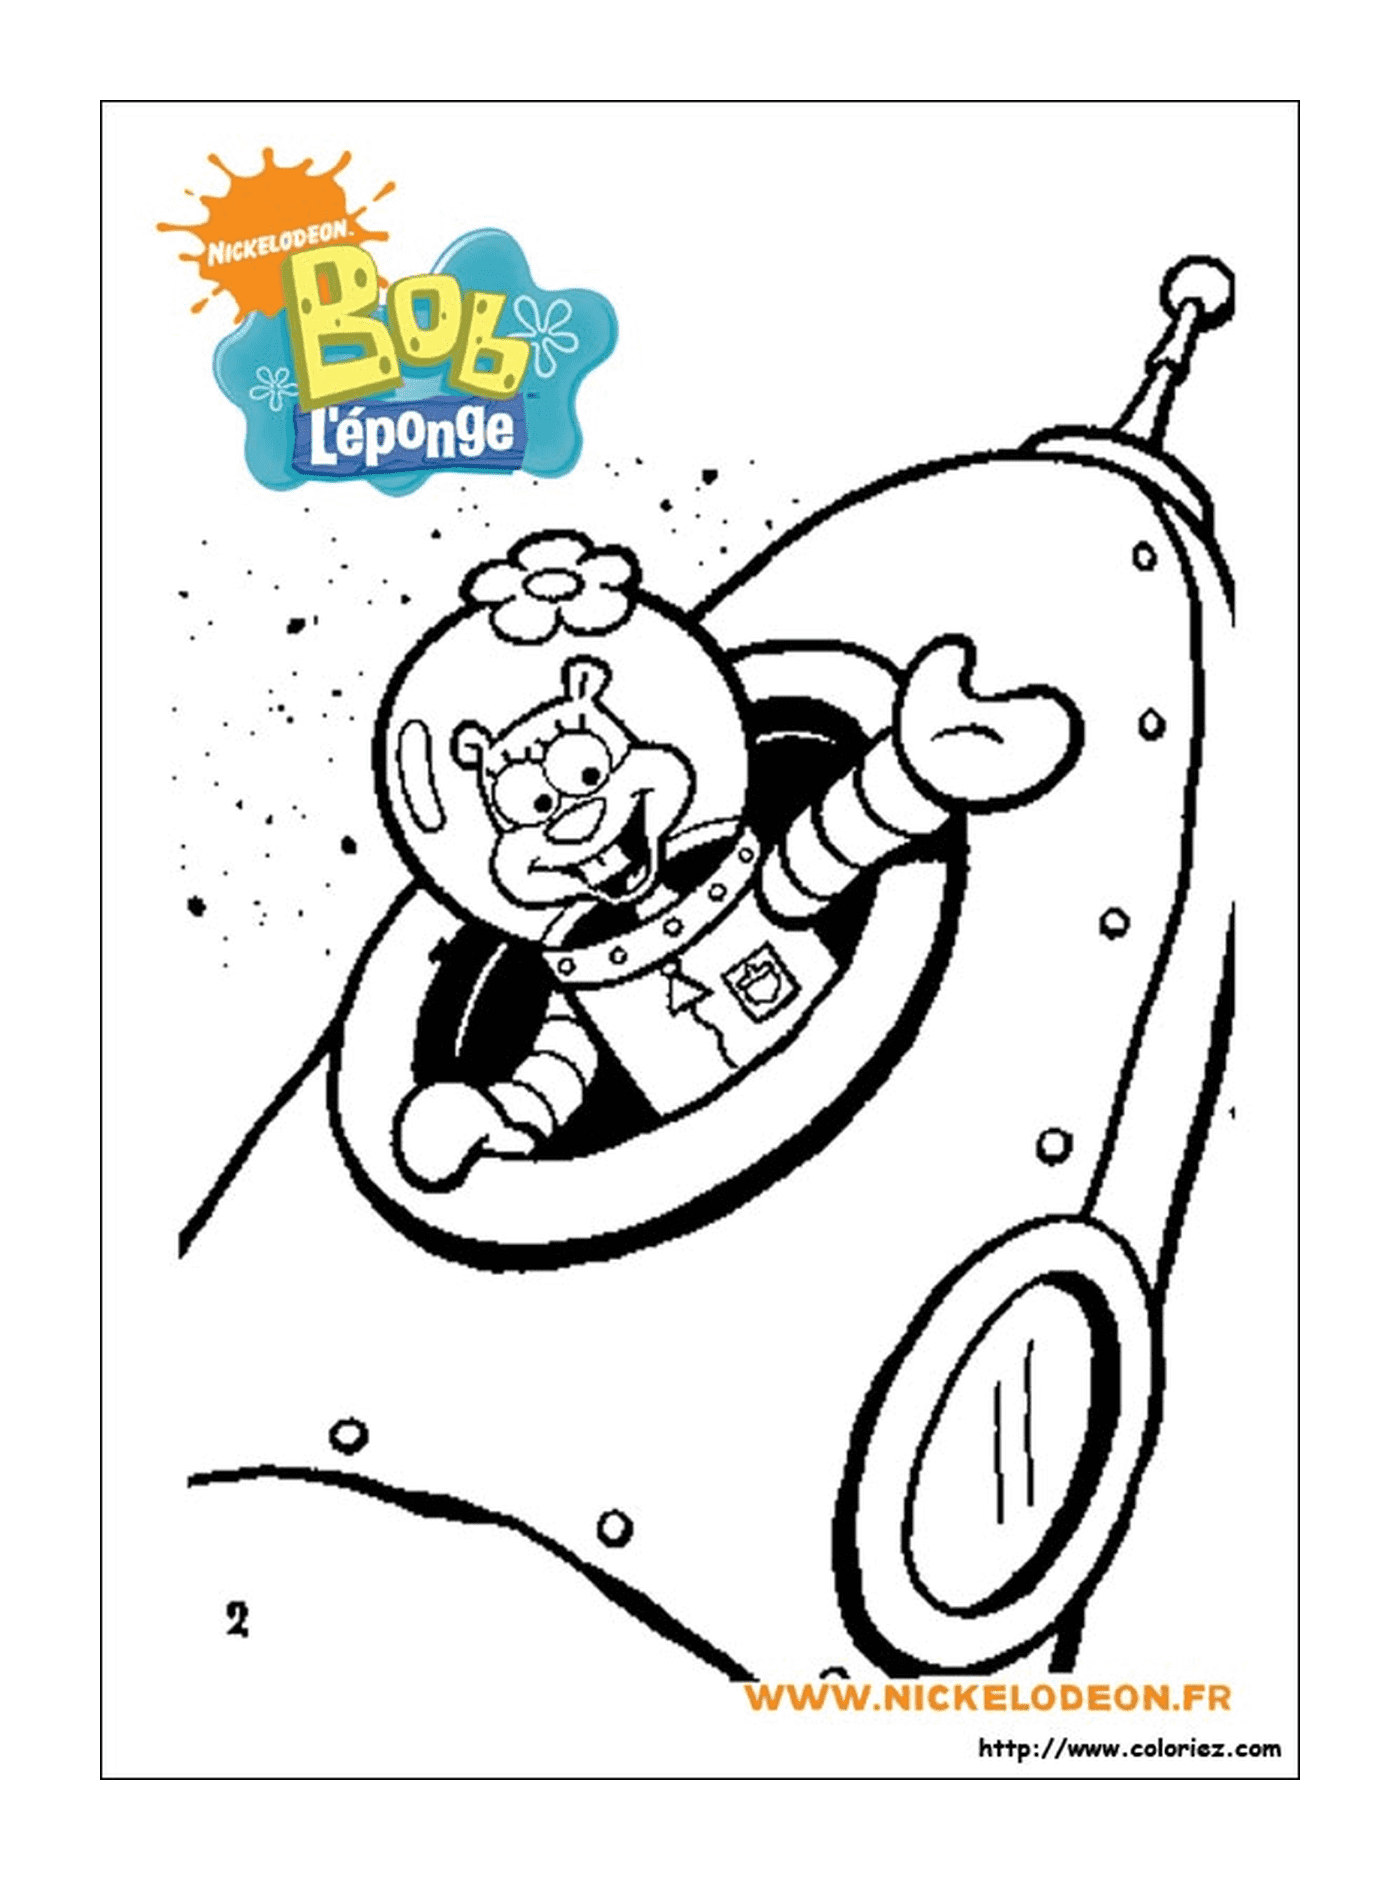  Spongebob, un personaggio dei cartoni animati, vestito da astronauta 